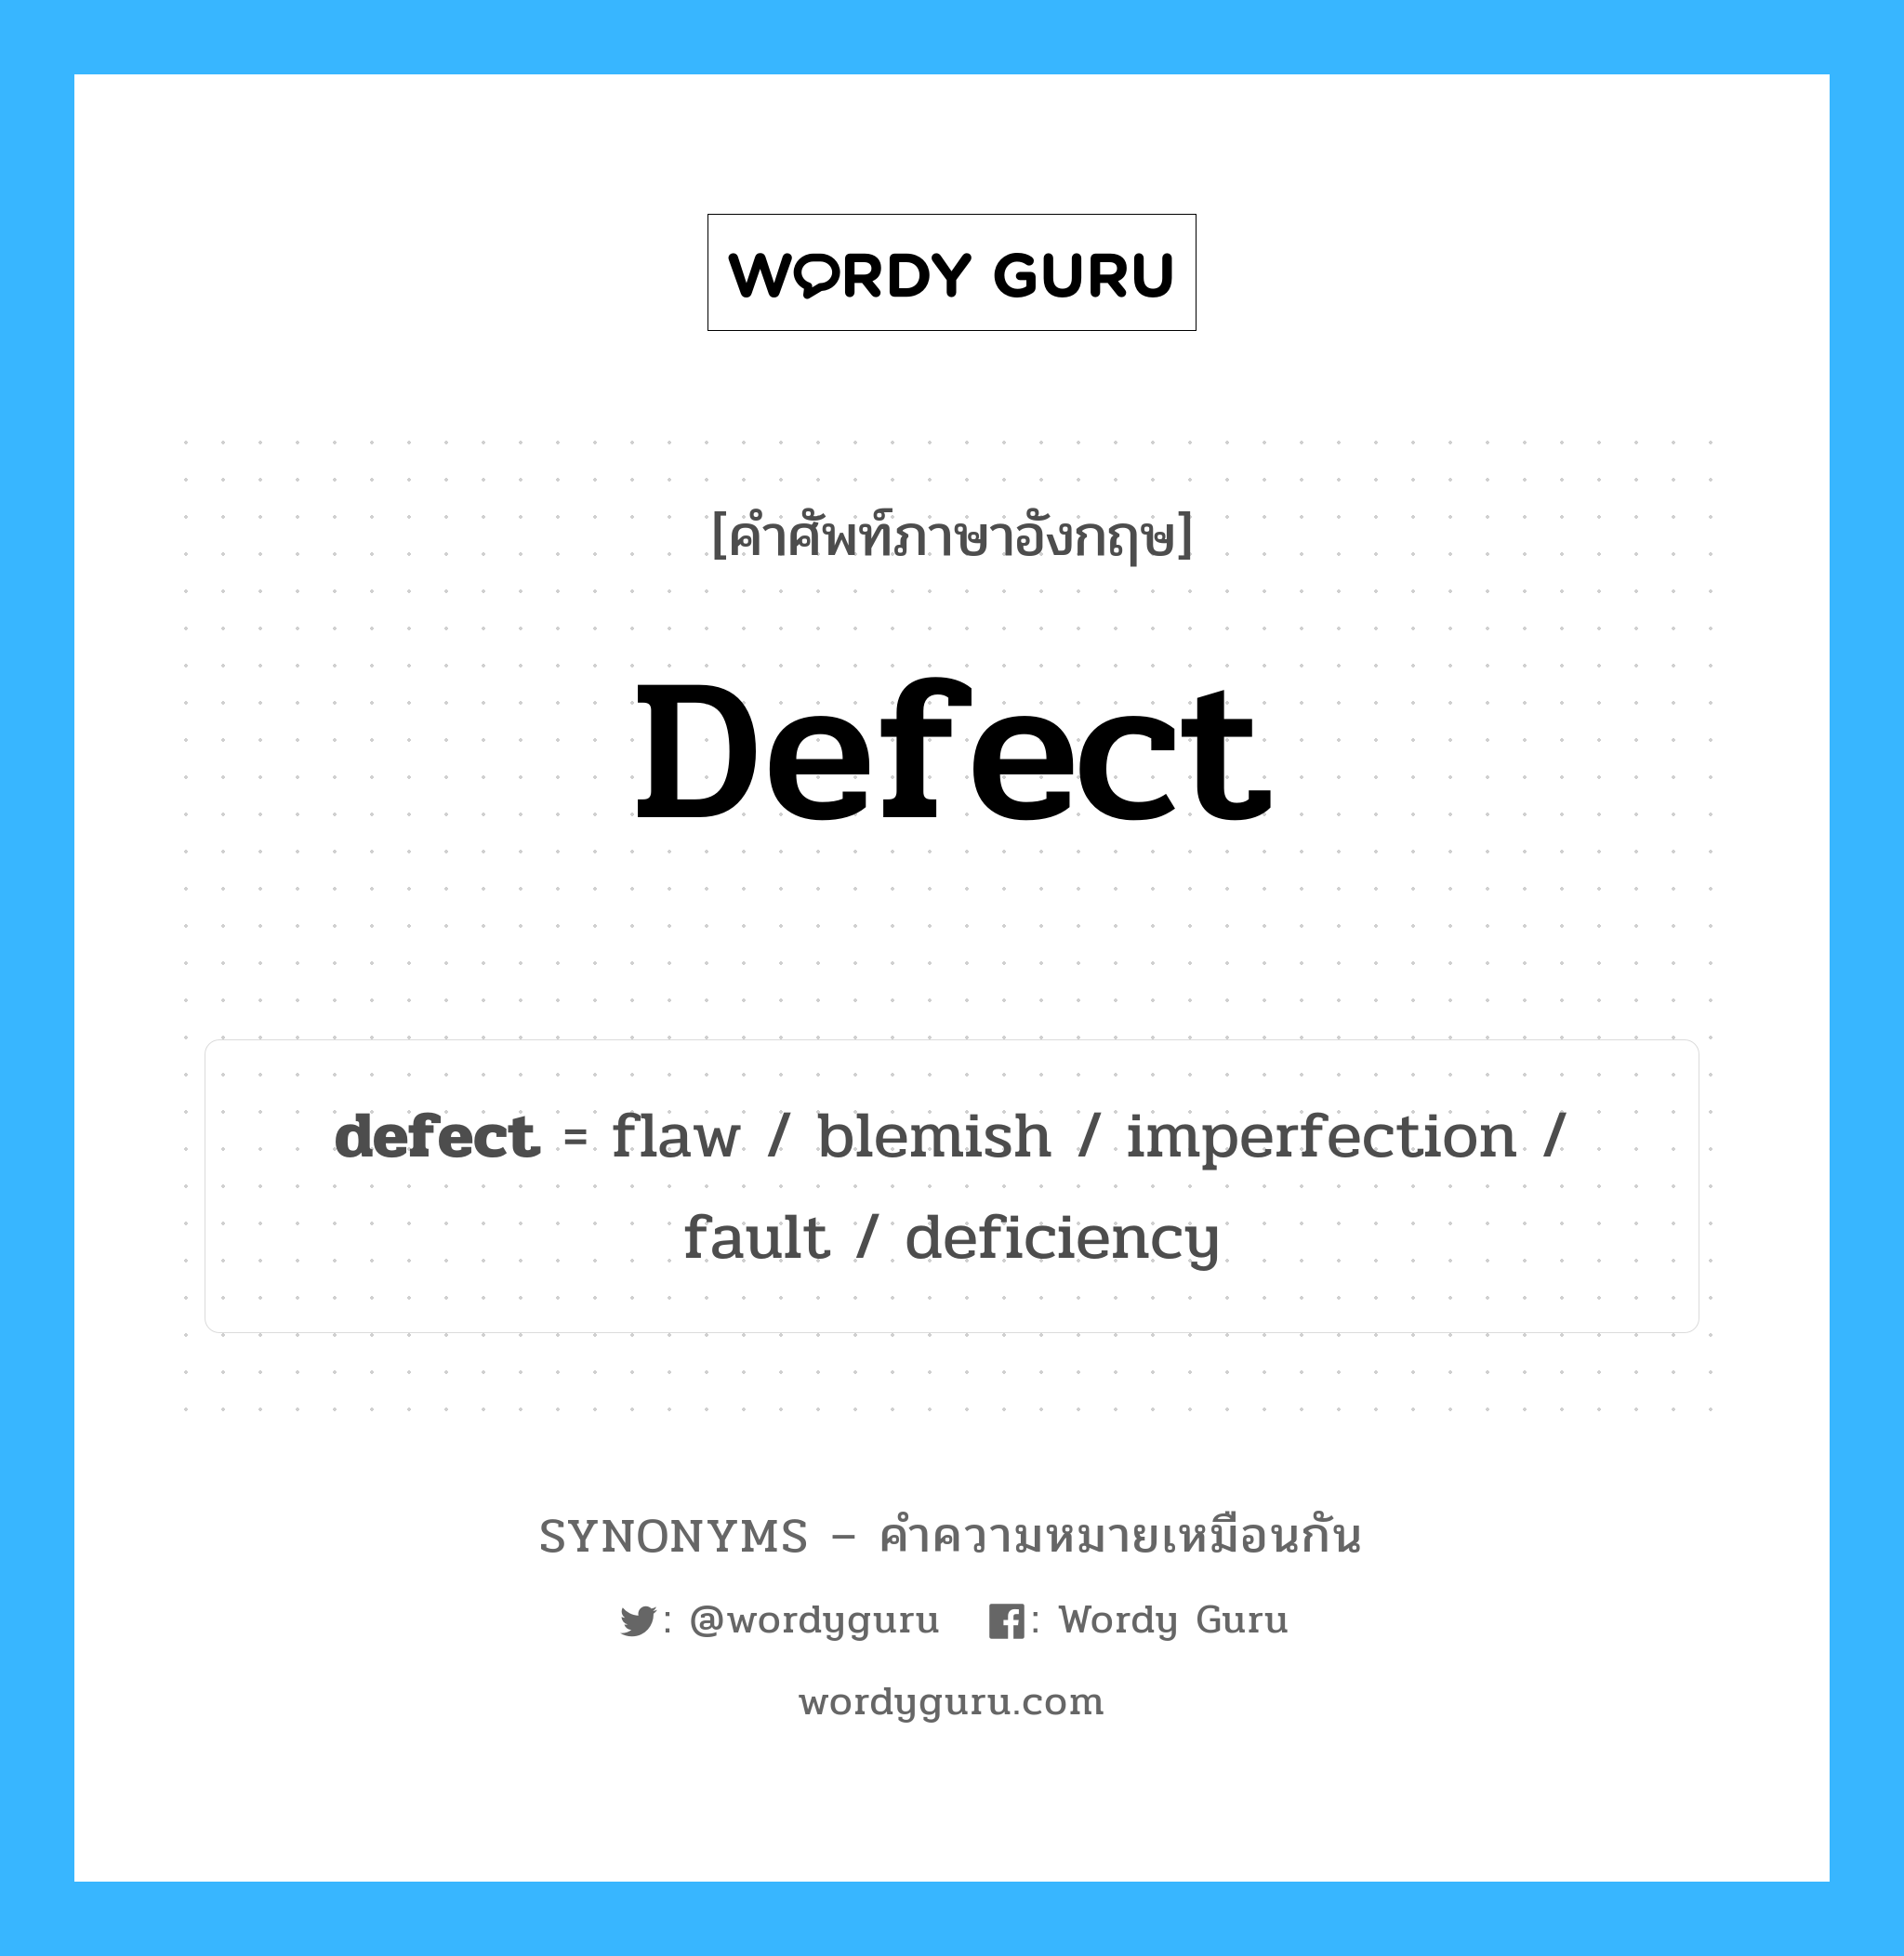 deficiency เป็นหนึ่งใน defect และมีคำอื่น ๆ อีกดังนี้, คำศัพท์ภาษาอังกฤษ deficiency ความหมายคล้ายกันกับ defect แปลว่า ขาด หมวด defect